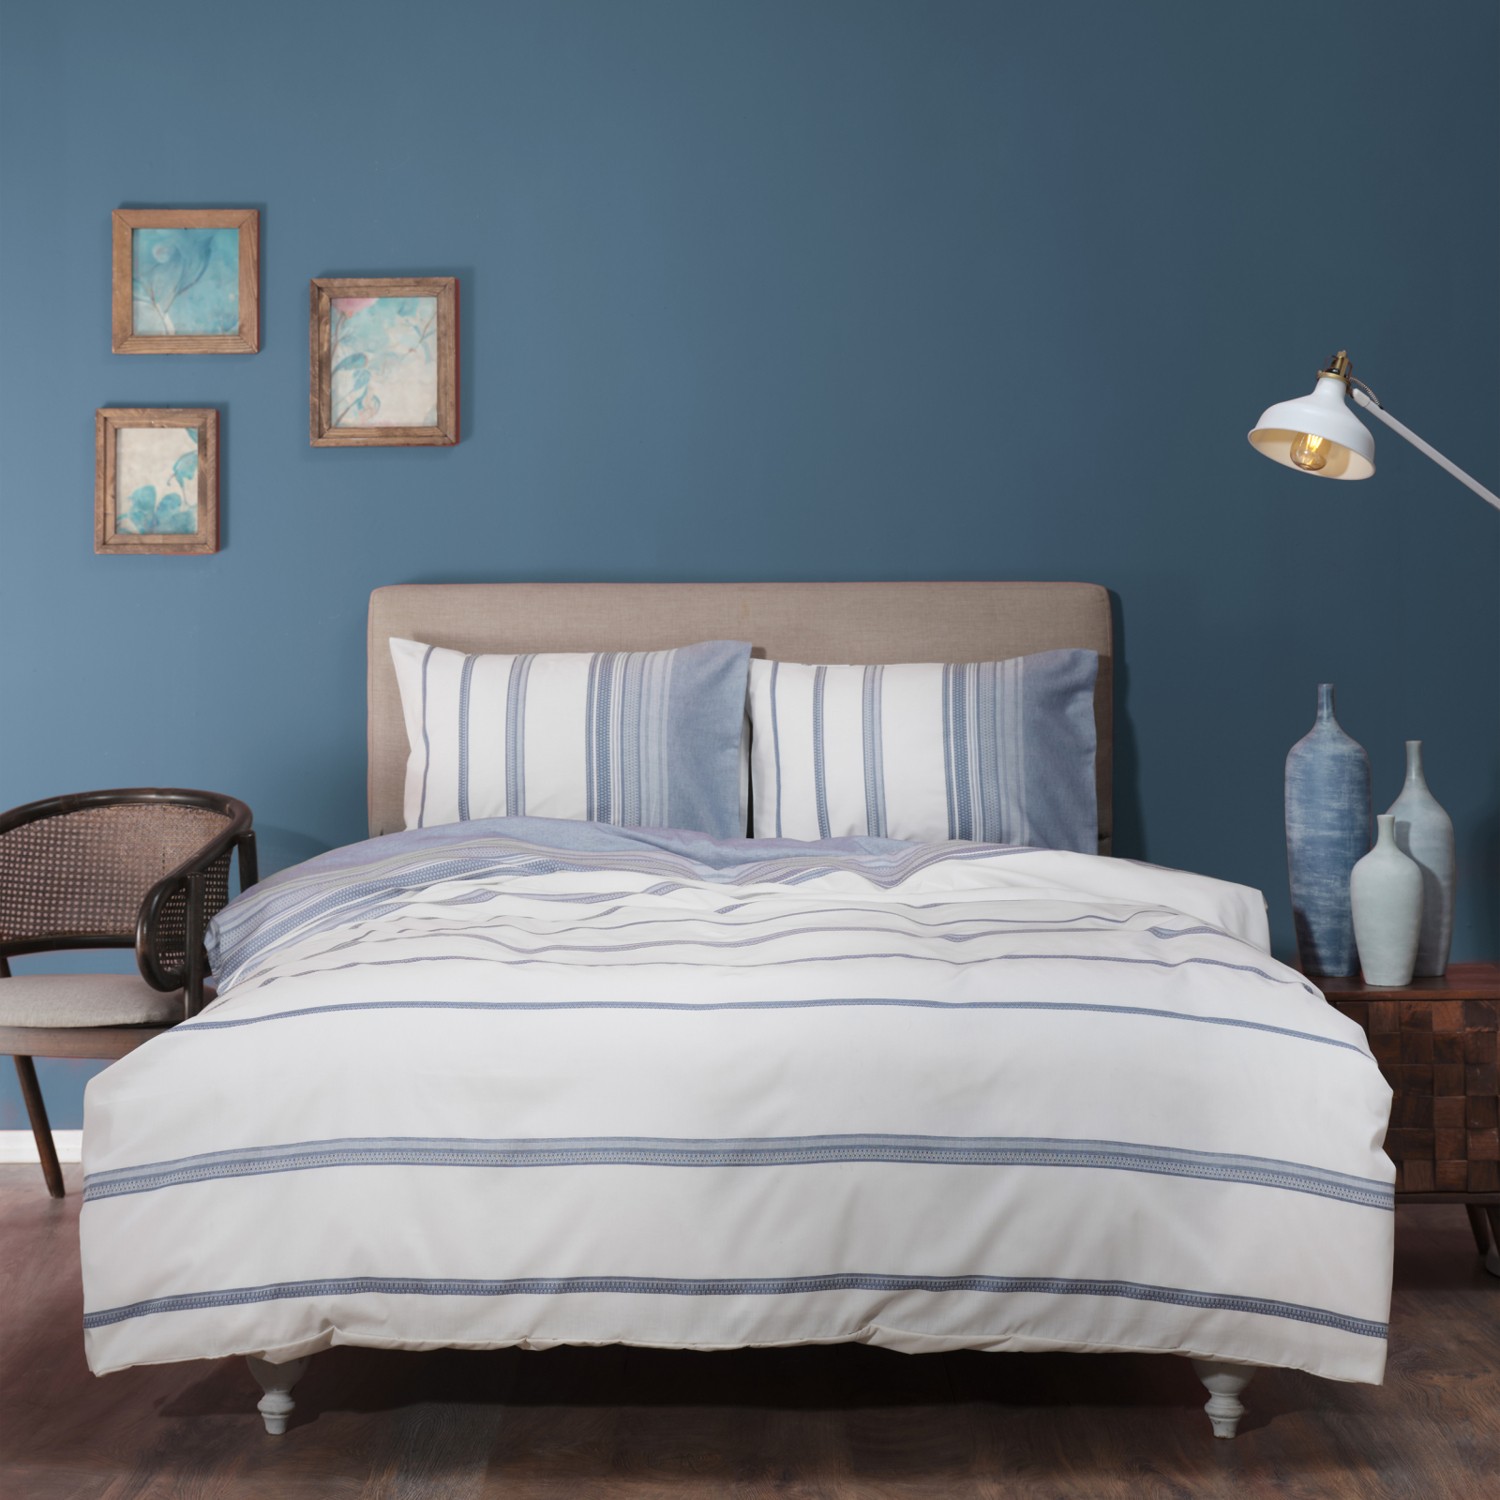 karaca home комплект постельного белья цвета хаки окрашенный в двойной пряже vetro khaki Karaca Home Vetro Синий Комплект постельного белья, окрашенных в двойной пряже